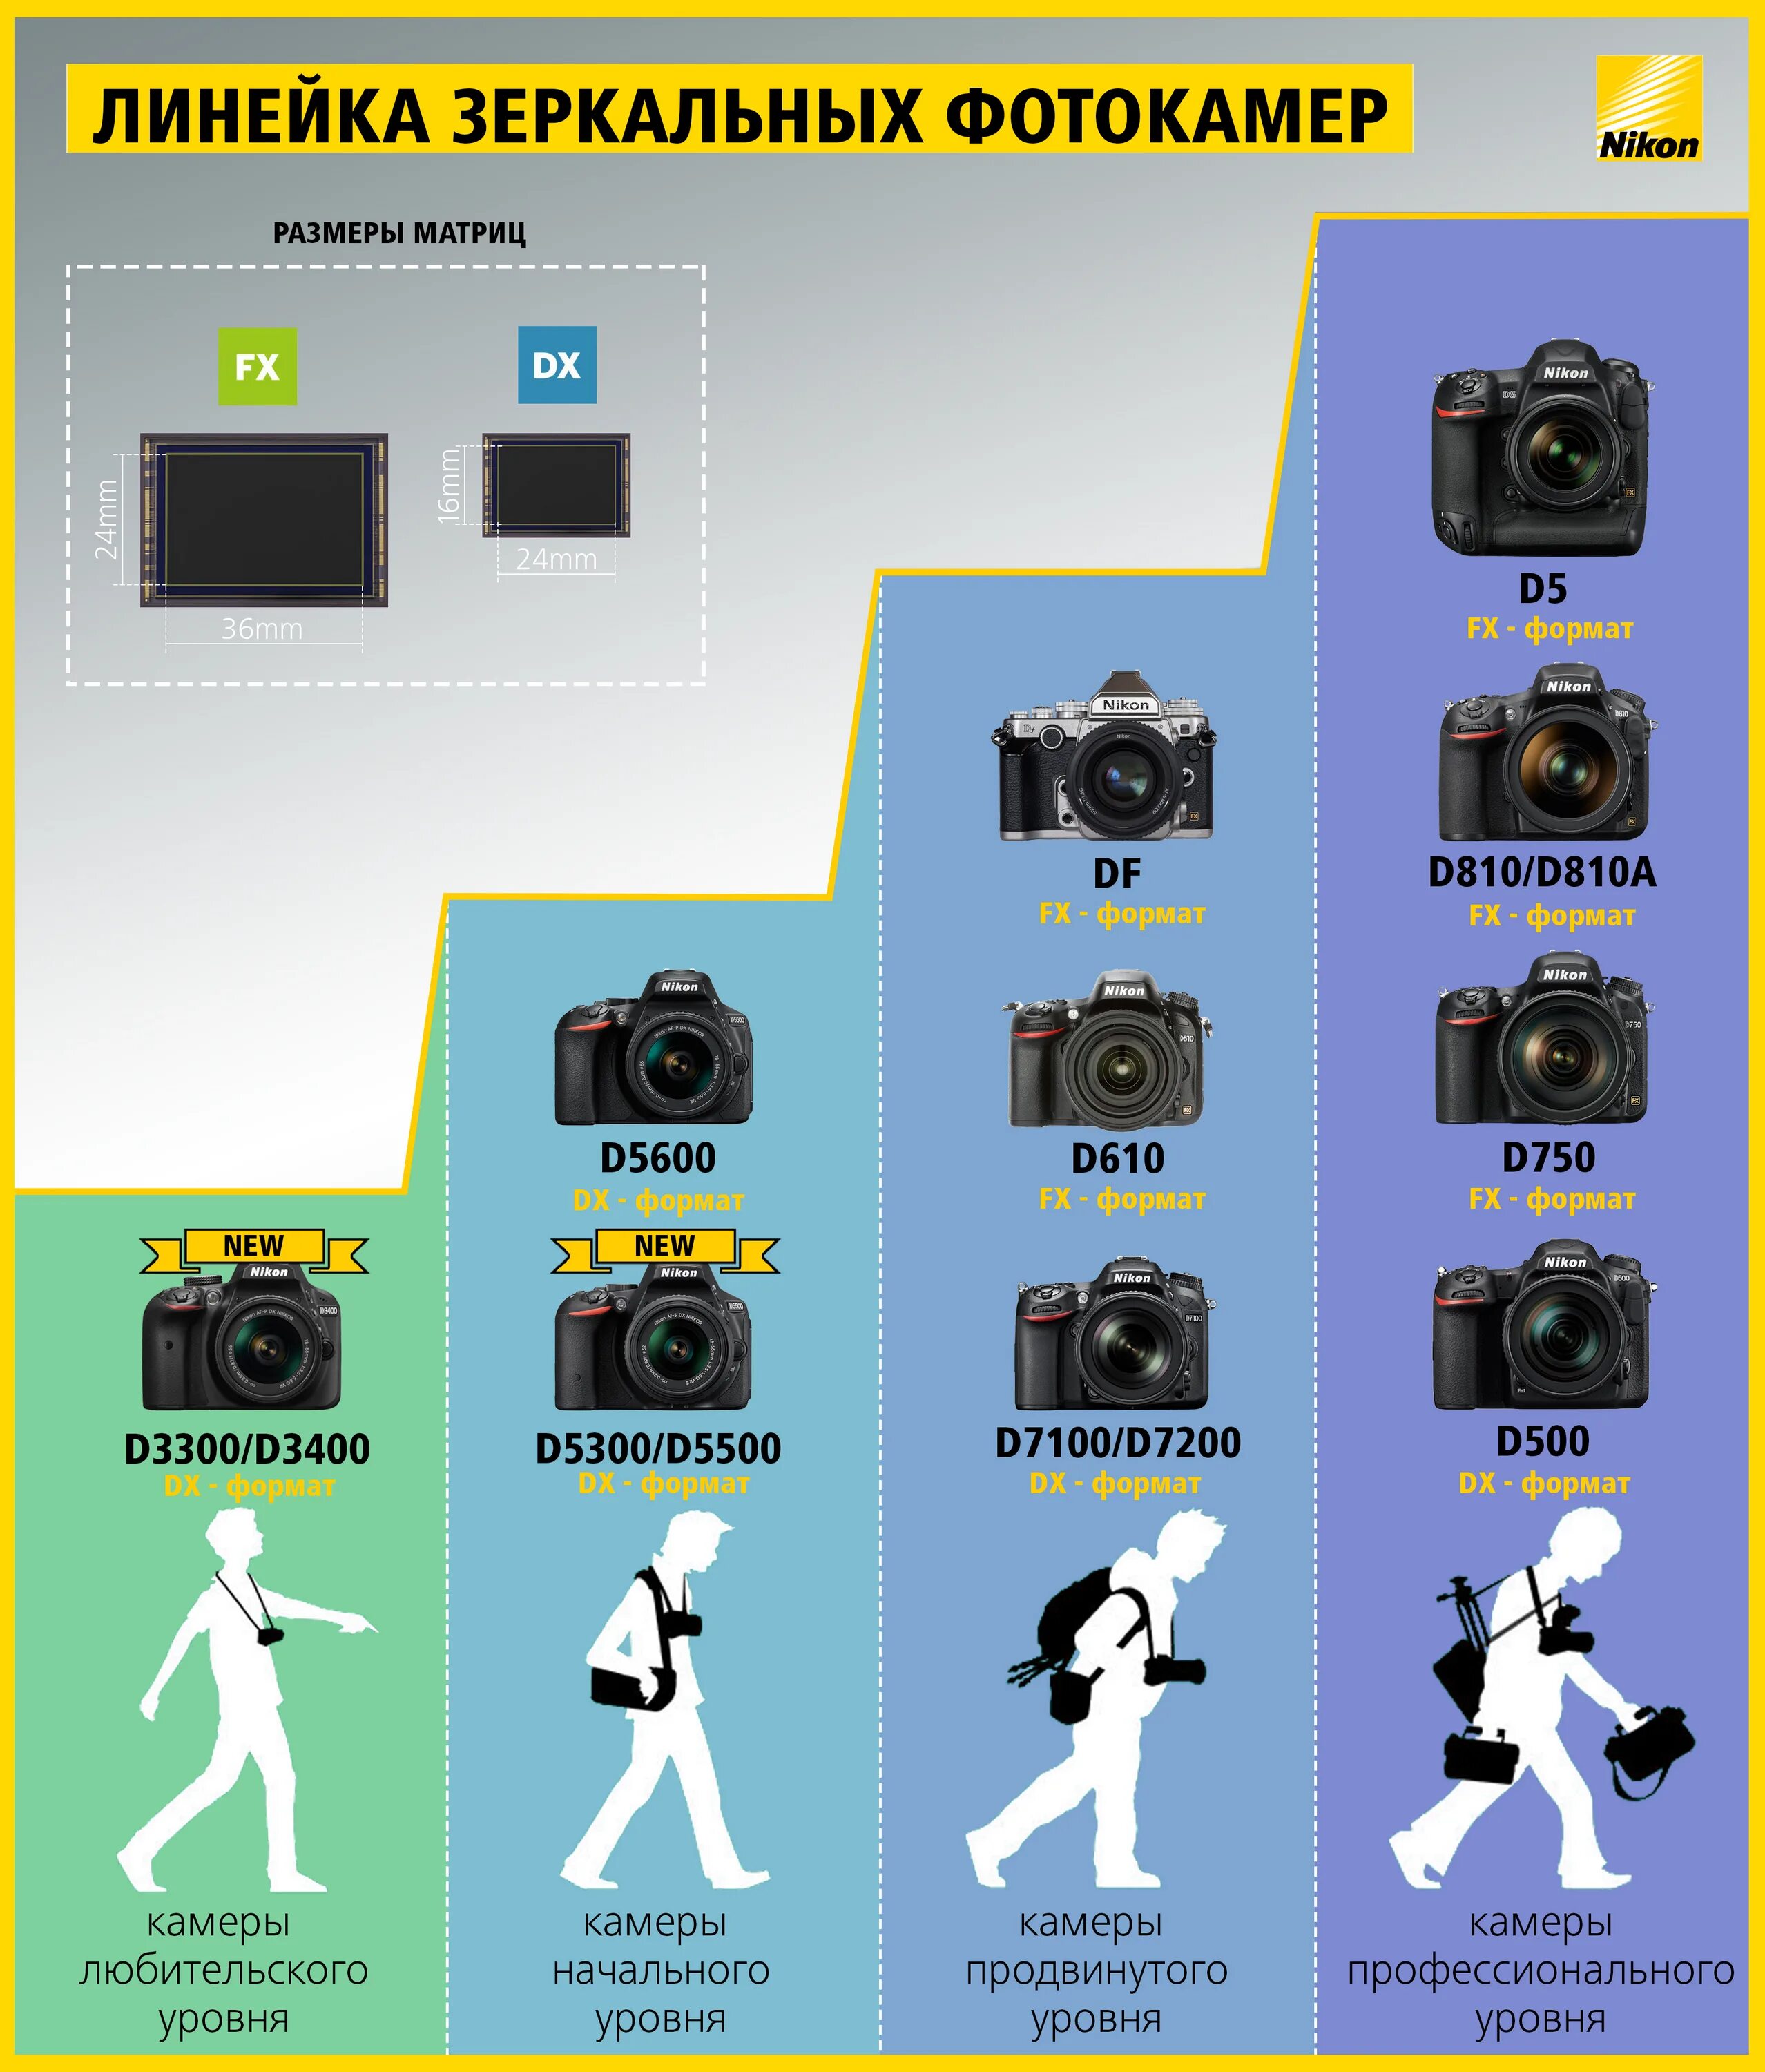 В каком году вышли камеры. Canon линейка фотоаппаратов 2022. Линейка зеркальных фотоаппаратов Nikon. Линейка зеркальных фотоаппаратов Canon по годам.